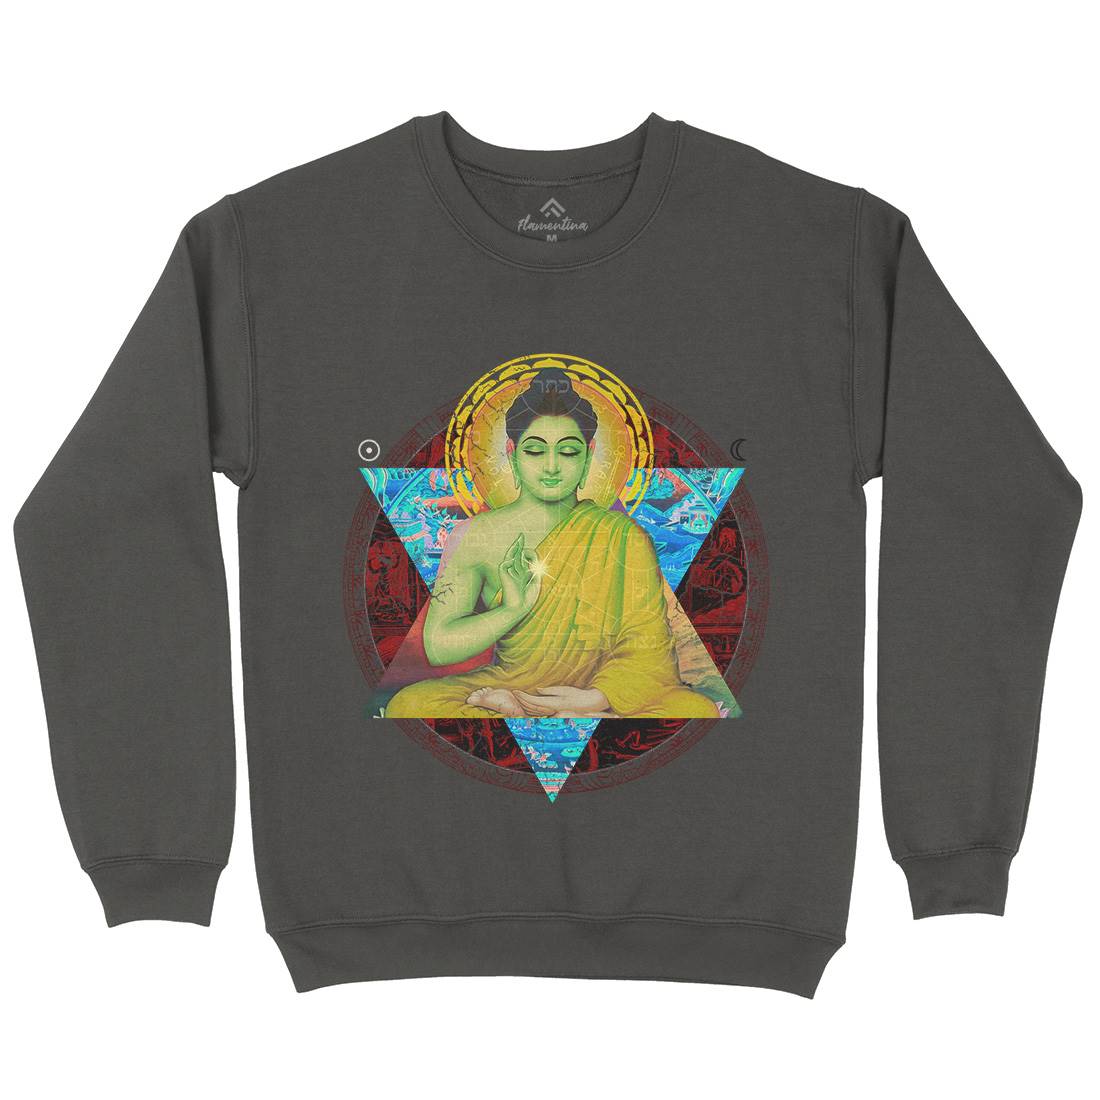 Buddhadharma Kids Crew Neck Sweatshirt Illuminati A812